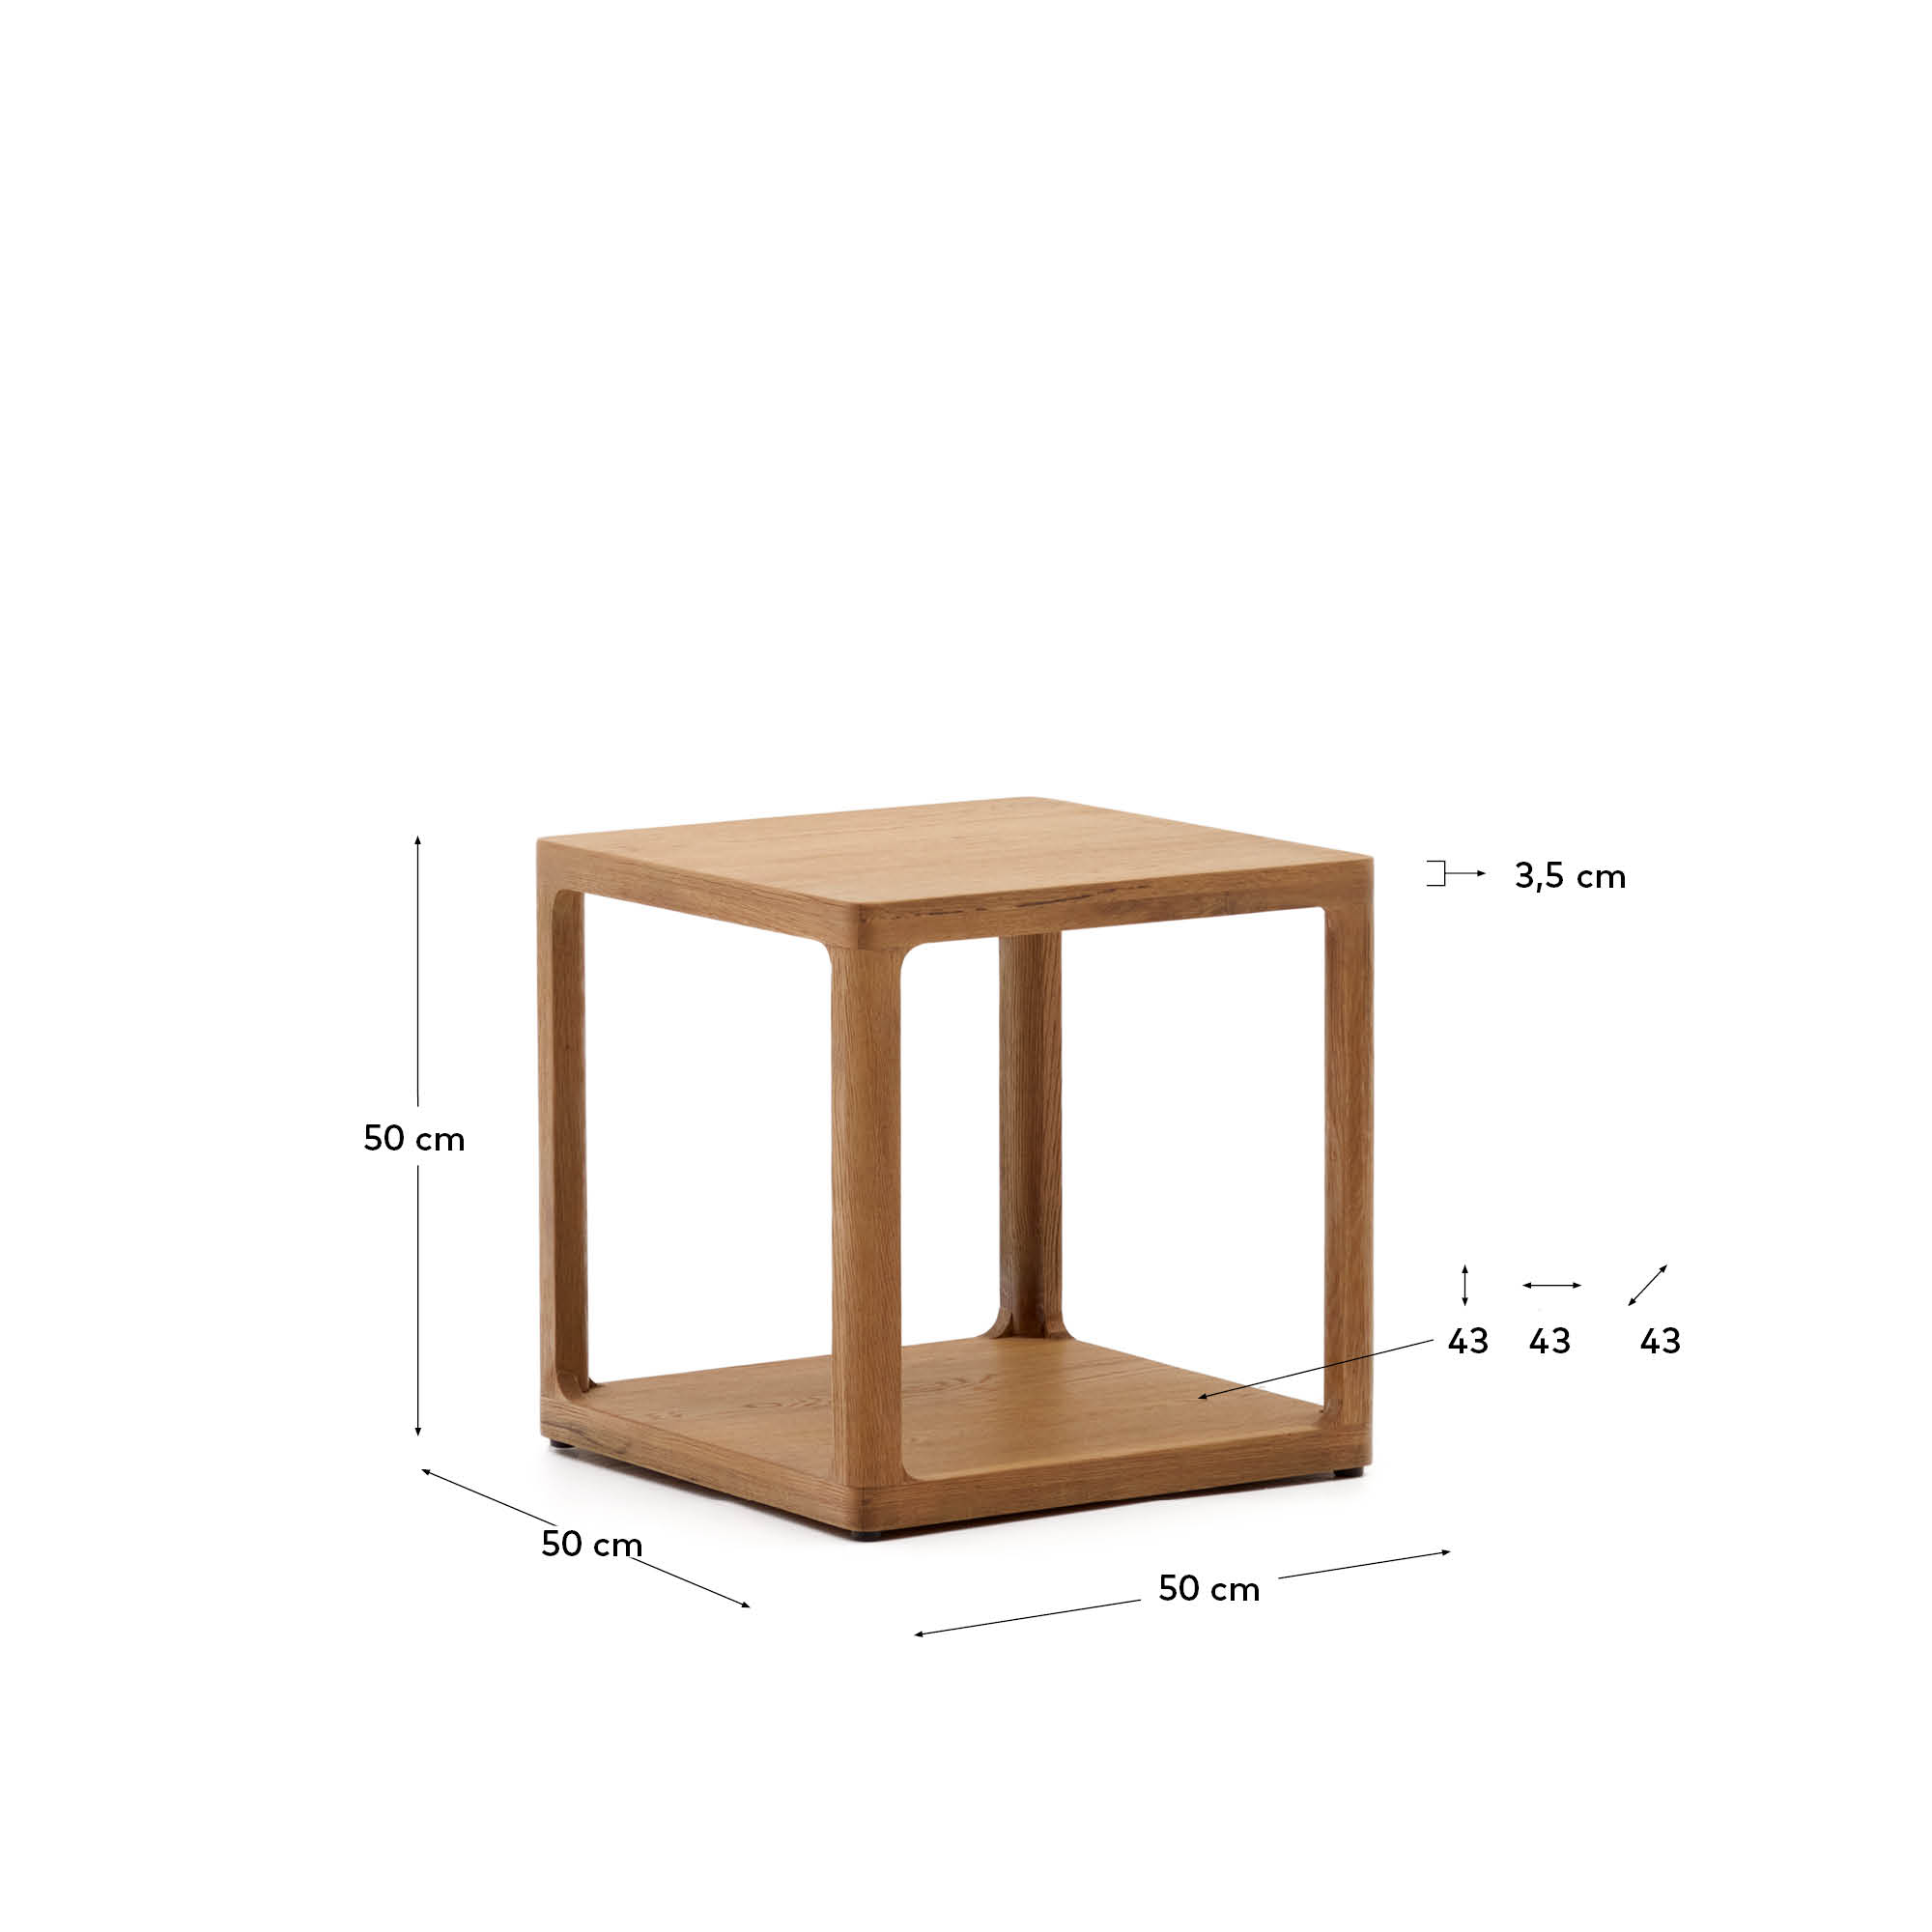 Maymai oak wood side table 50 x 50 cm - sizes